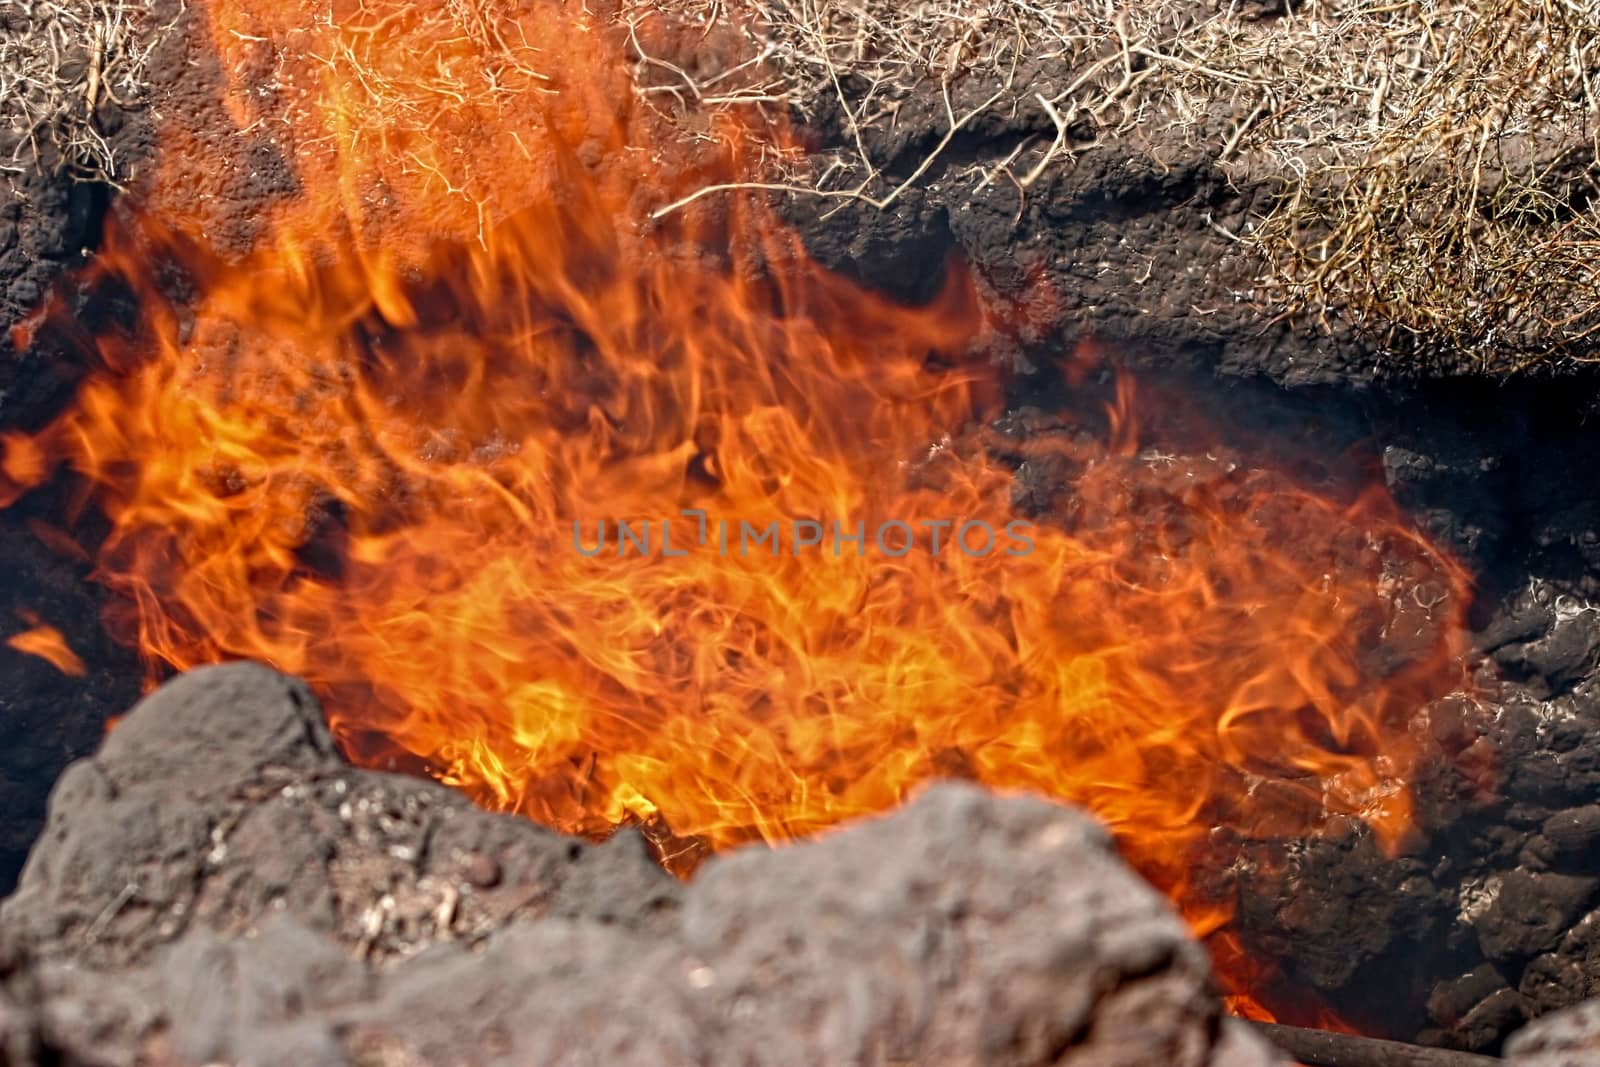 Volcanic Activity in Timanfaya National Park Lanzarote